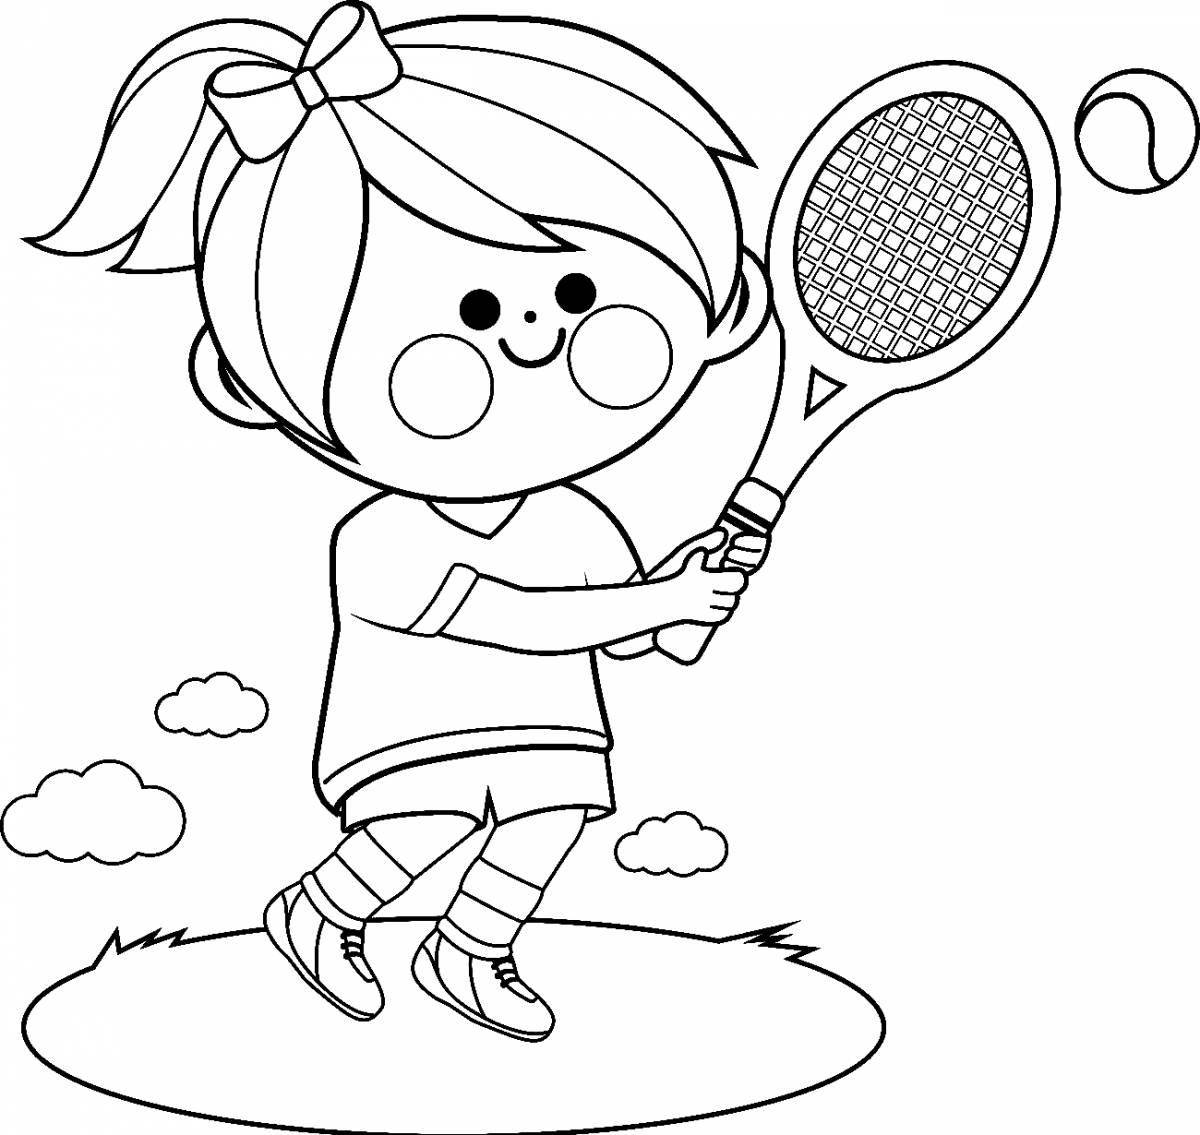 Красочная теннисная раскраска для детей